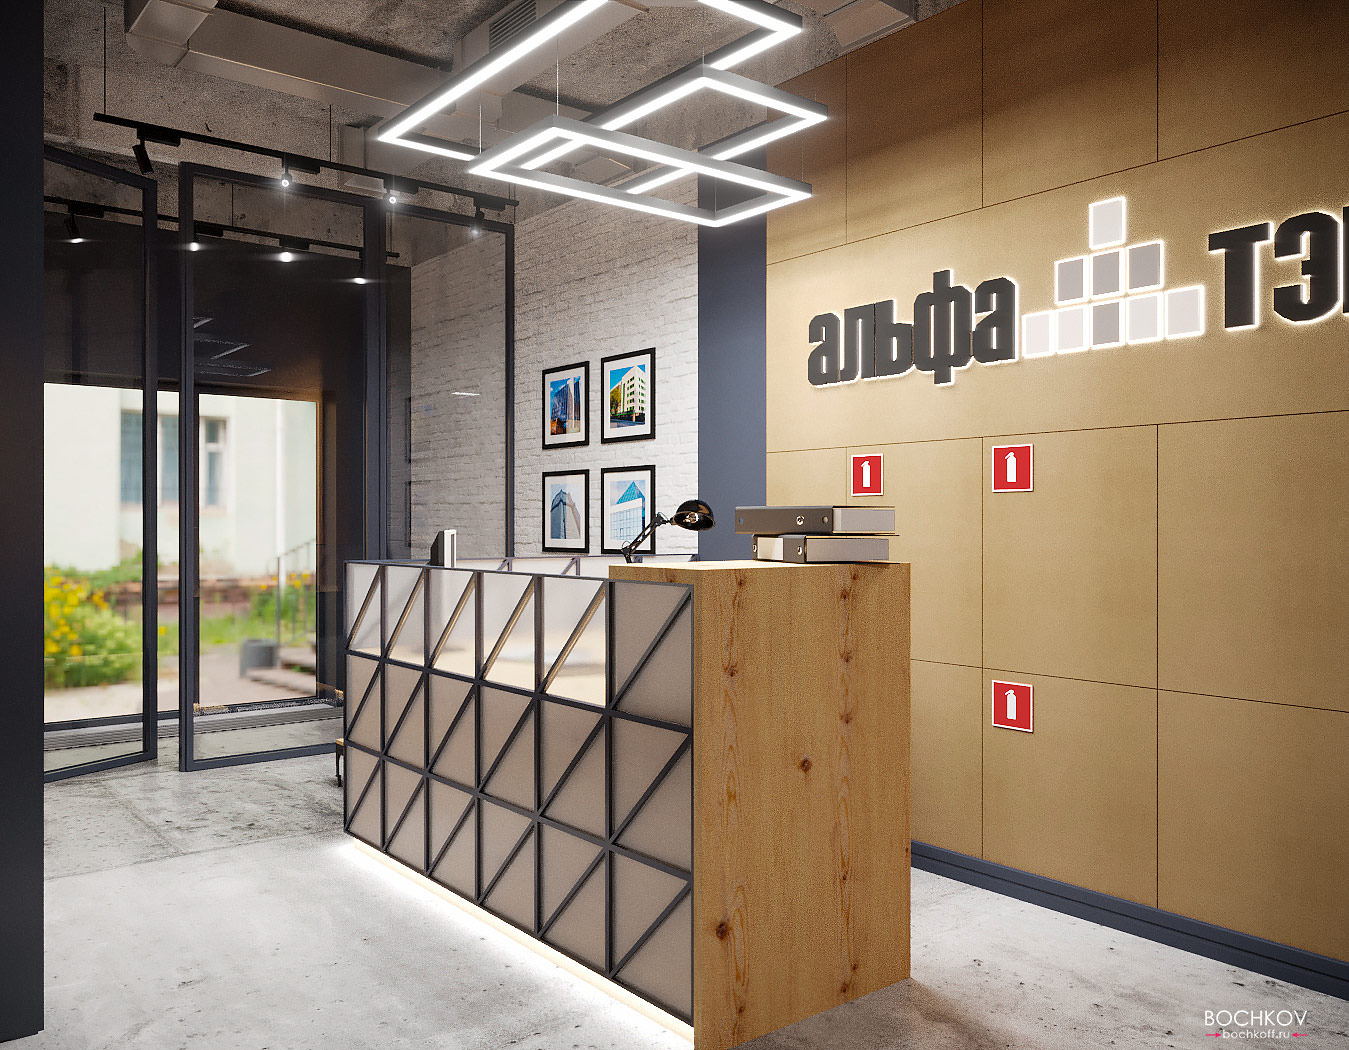 ресепшн – административная зона или зона регистрации гостей | Дизайн интерьера офиса компании «Альфа Тэк» https://alfa-tec.ru